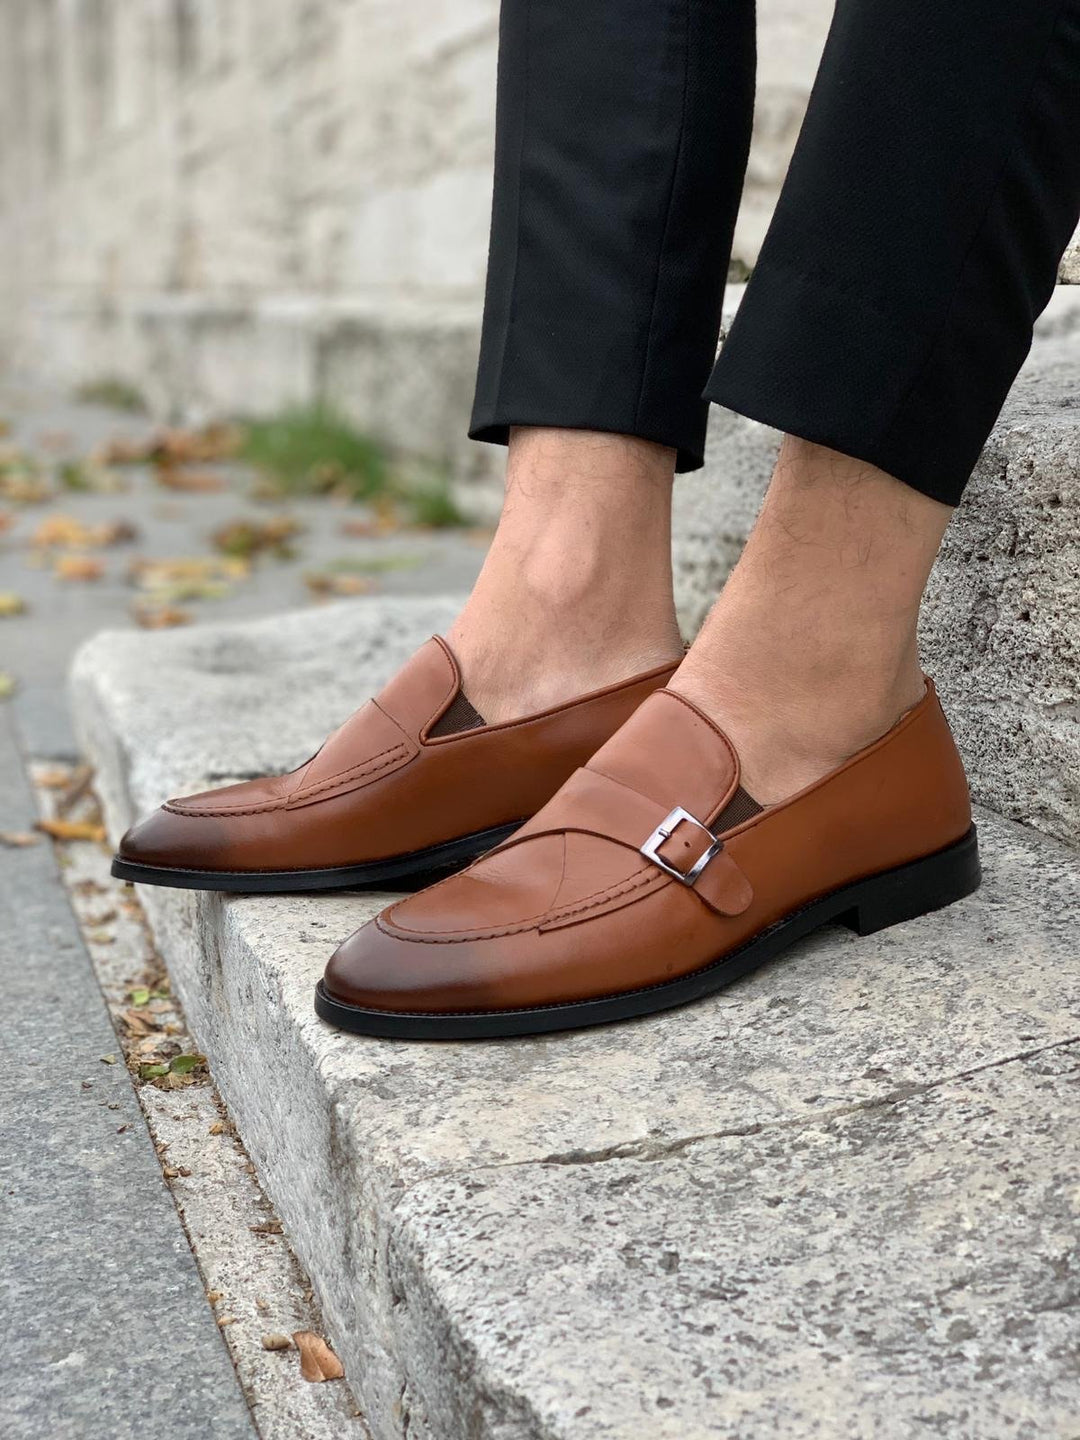 Men's Full Grain Italian Leather Single Buckle Loafer Shoes in Black & Tan